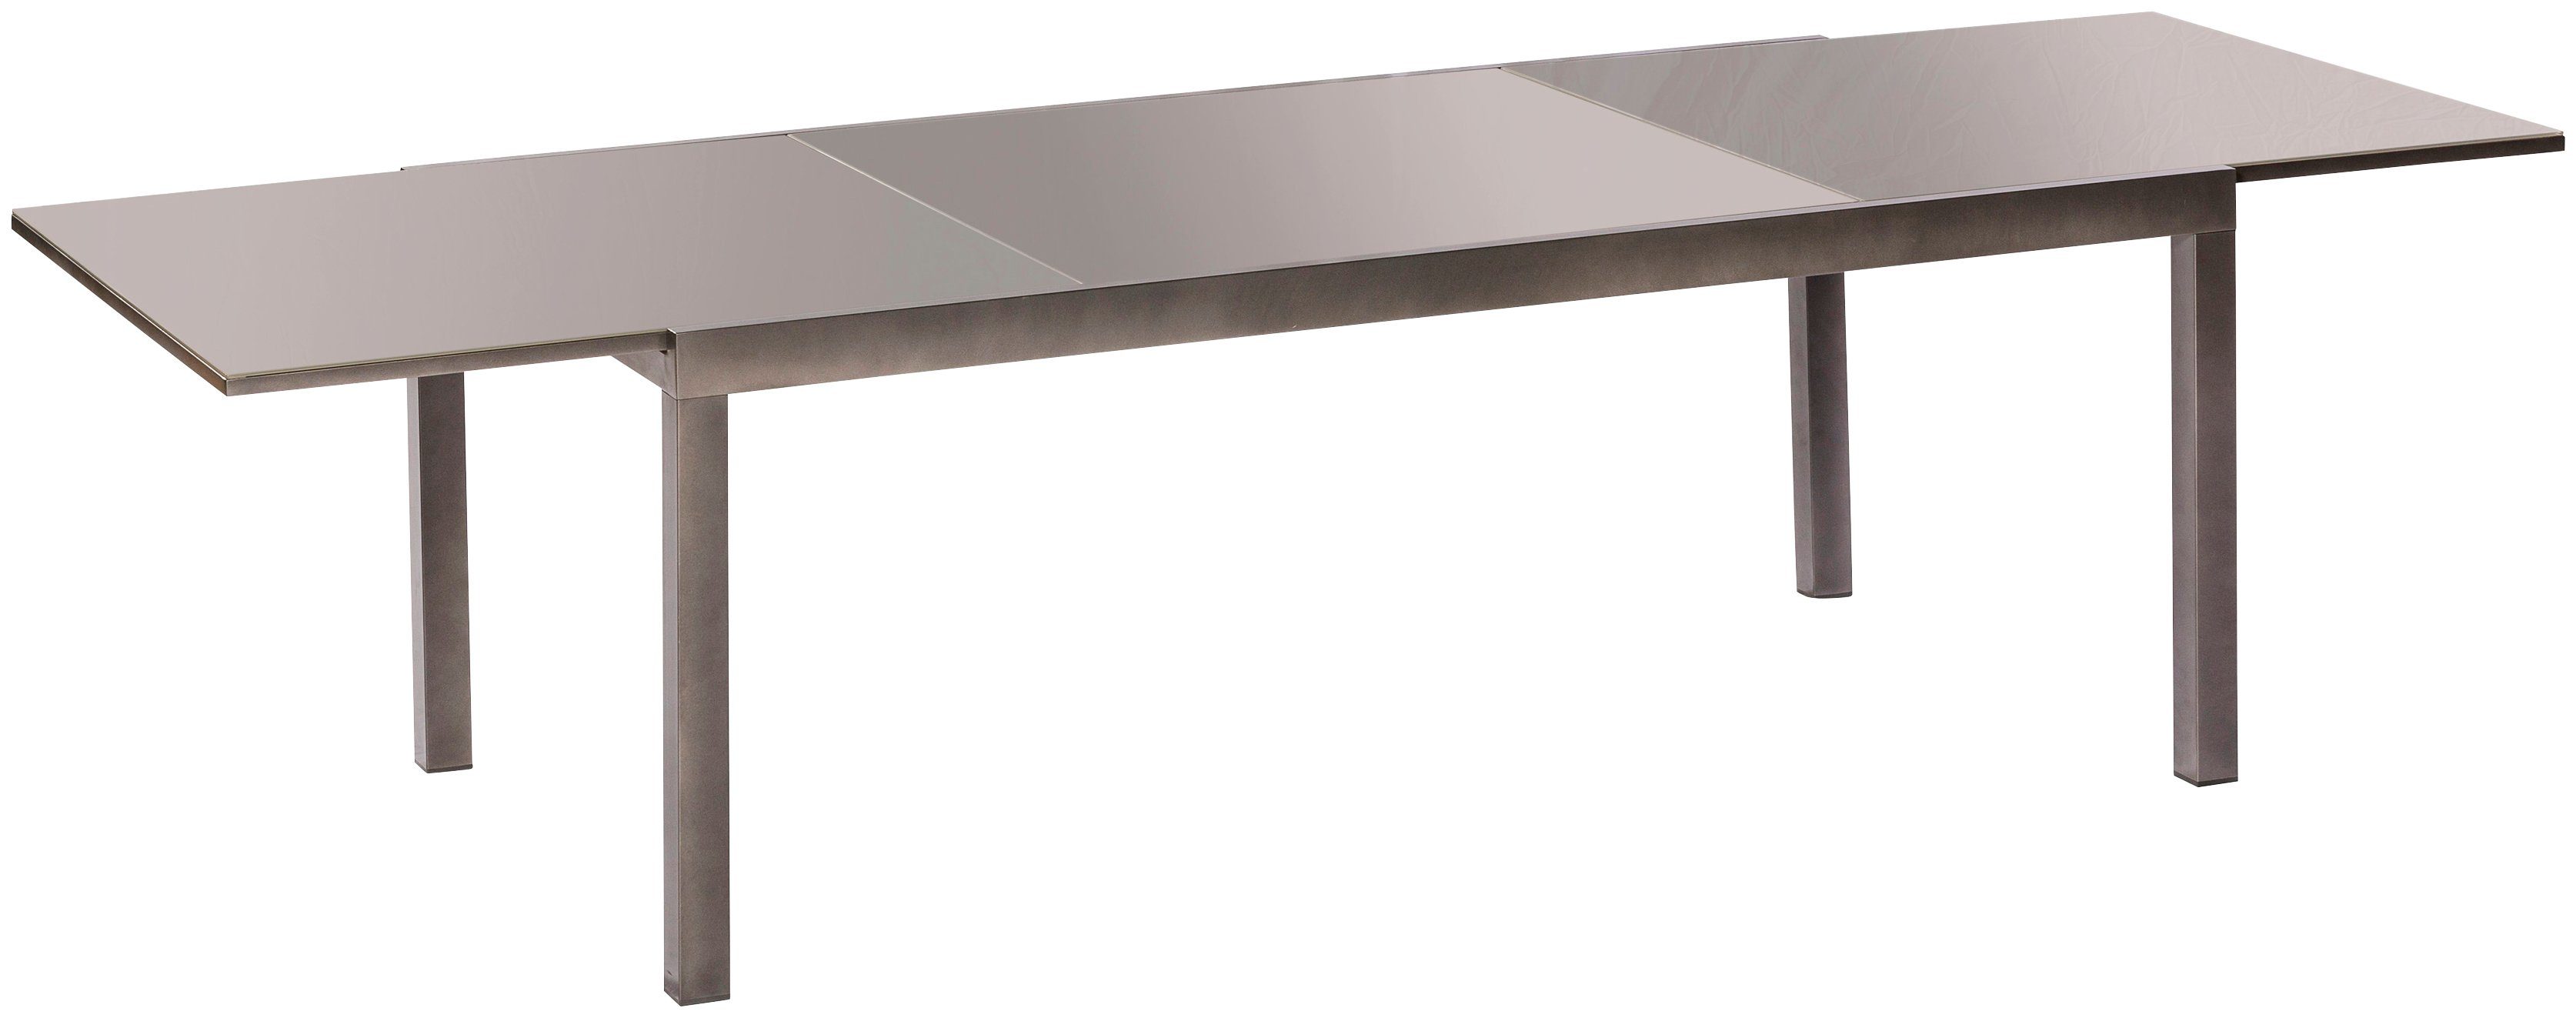 MERXX Gartentisch Semi AZ-Tisch, cm 110x220